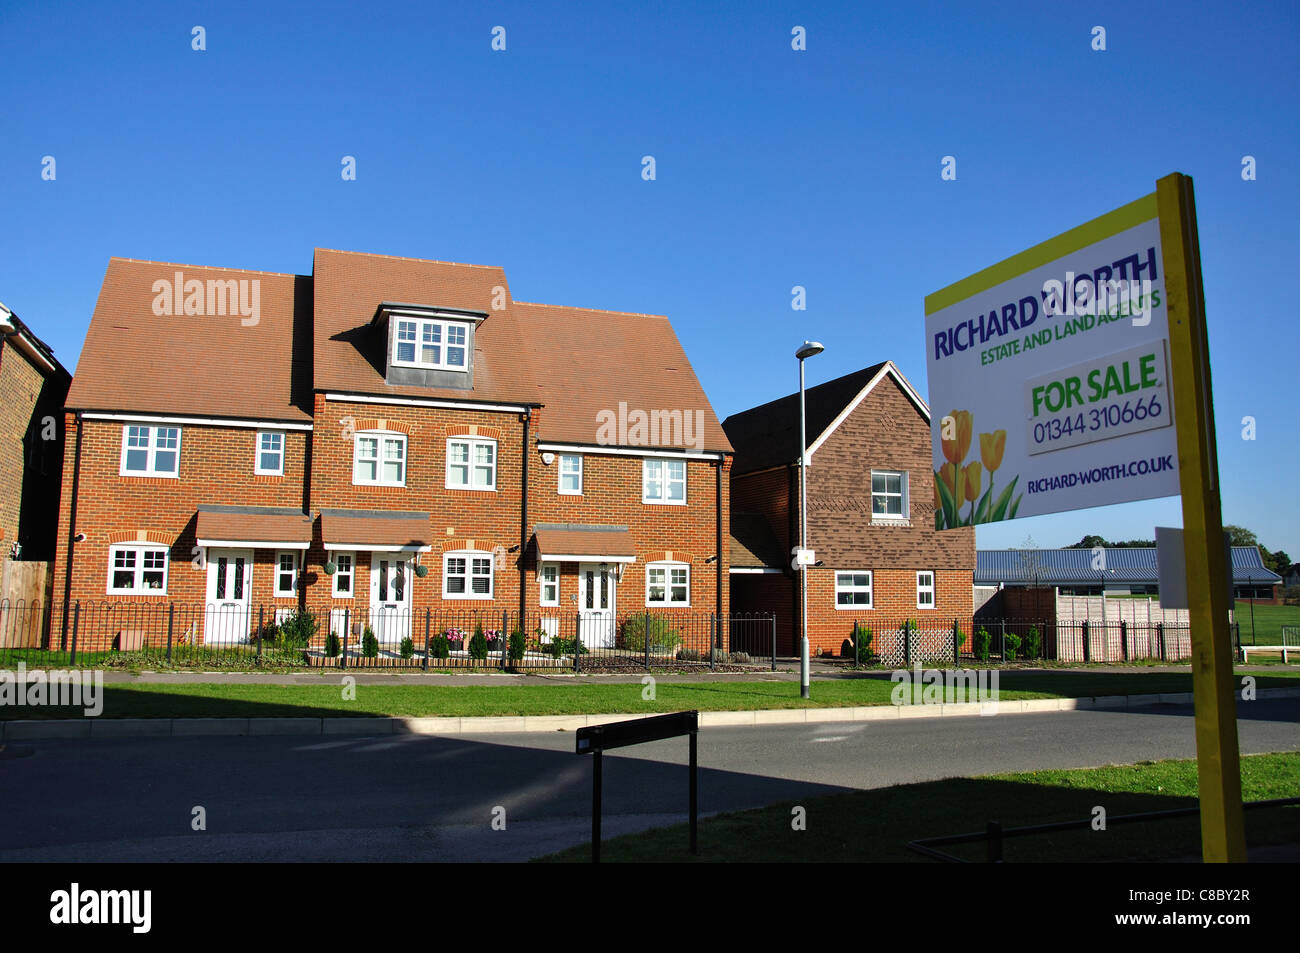 Housing development at Jennett's Park, Bracknell, Berkshire, England, United Kingdom Stock Photo